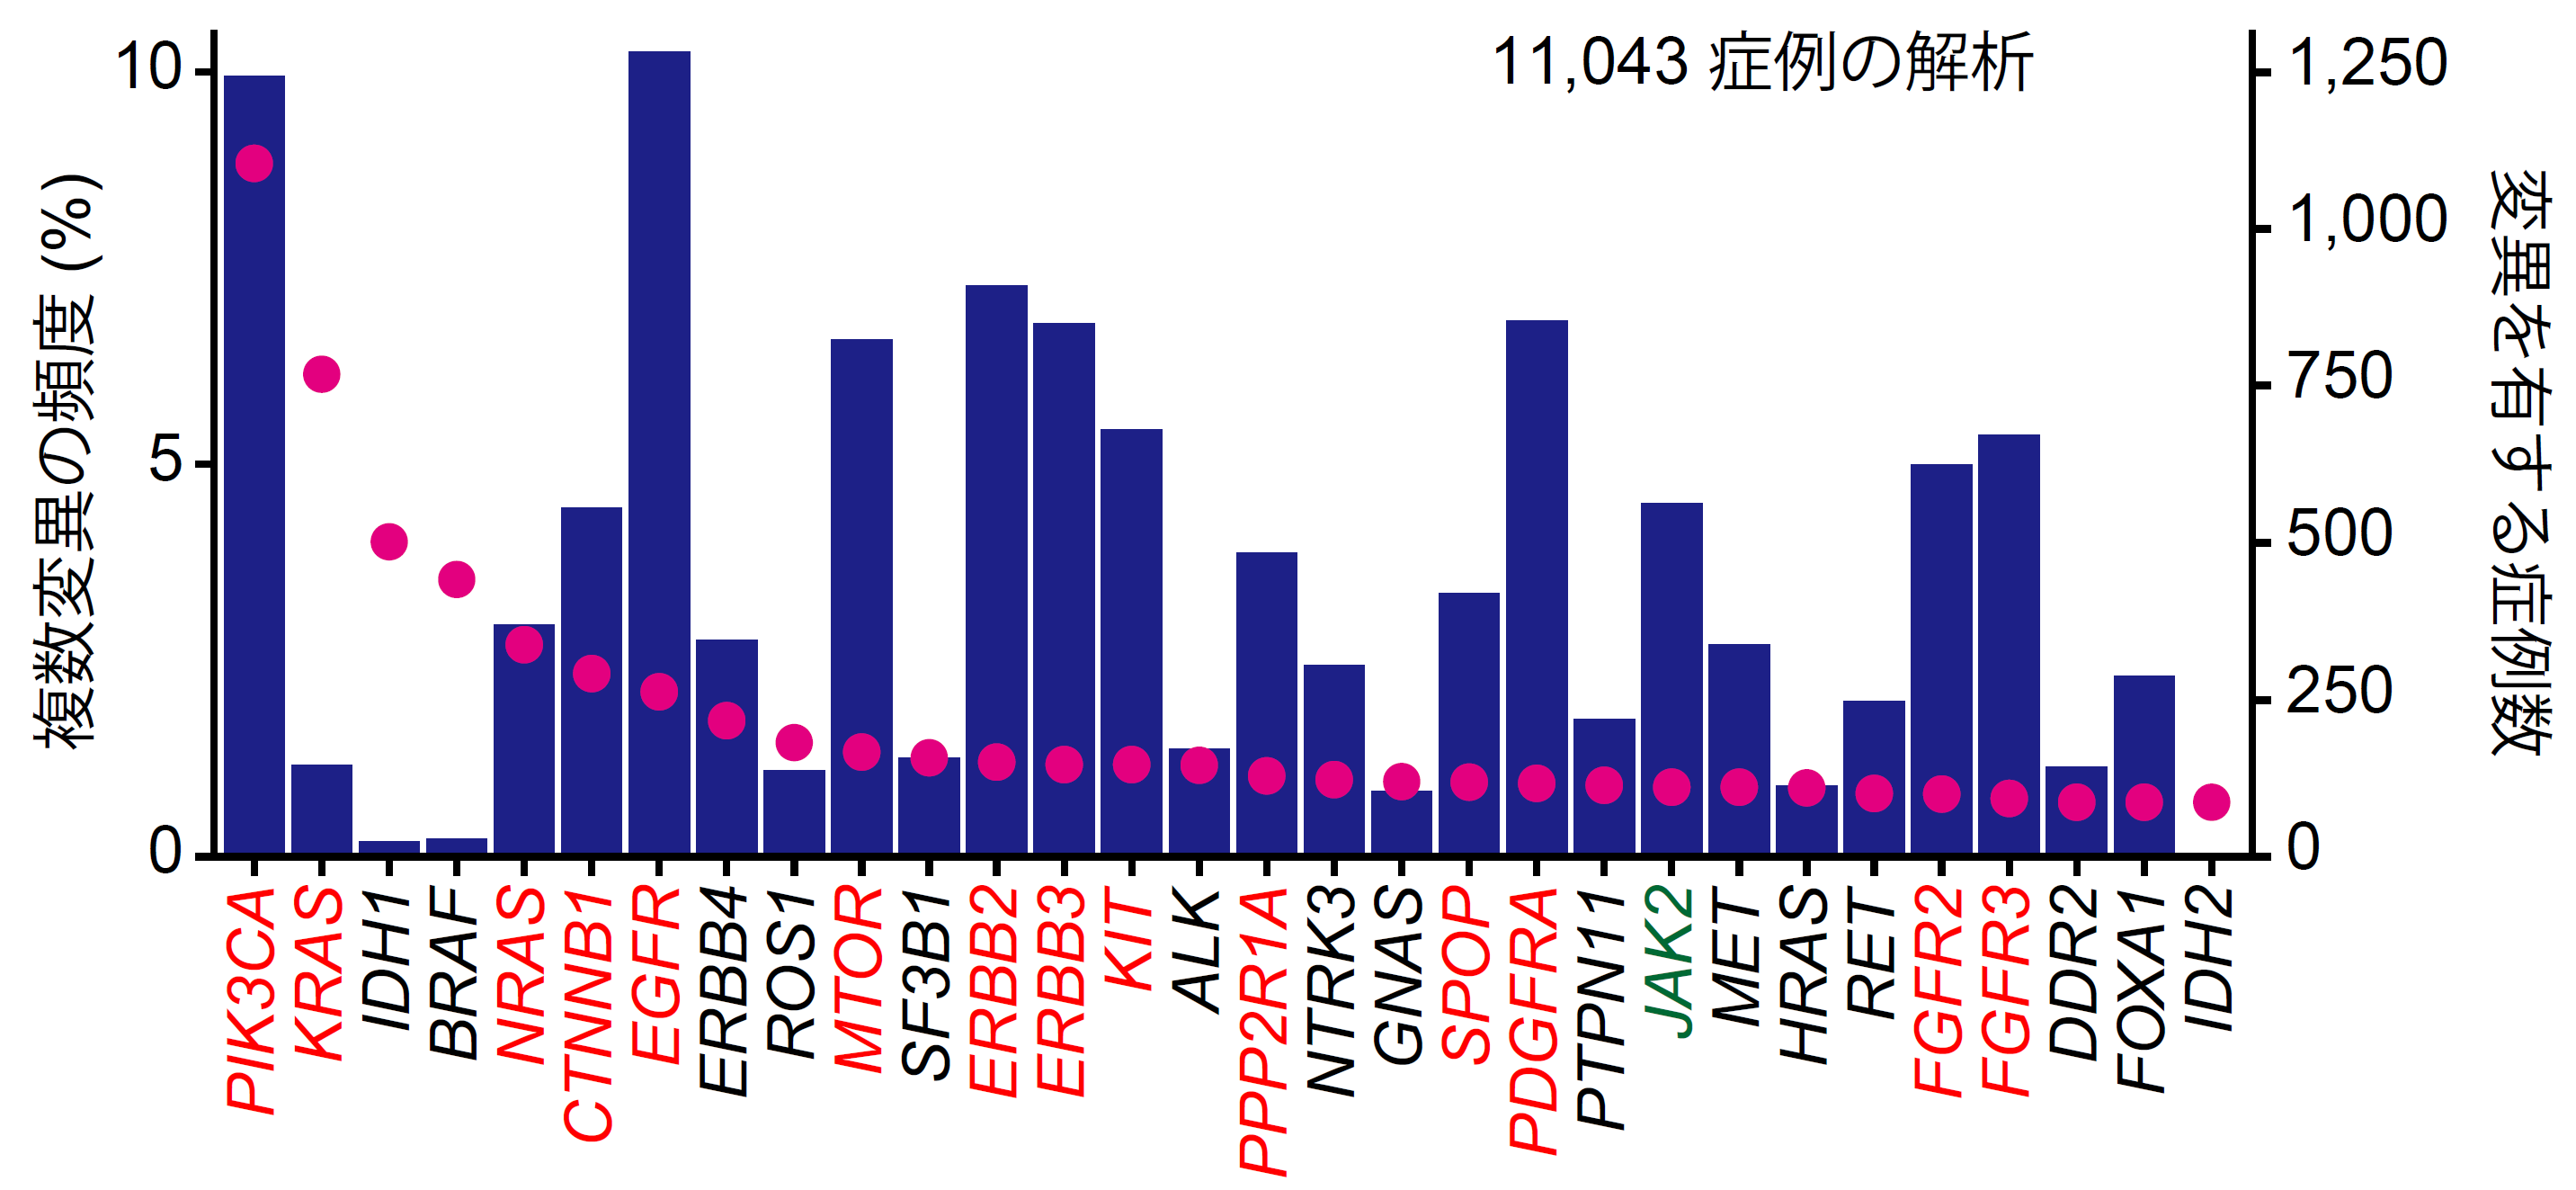 各がん遺伝子における変異を有する症例数（赤丸）と複数変異の頻度（青棒）